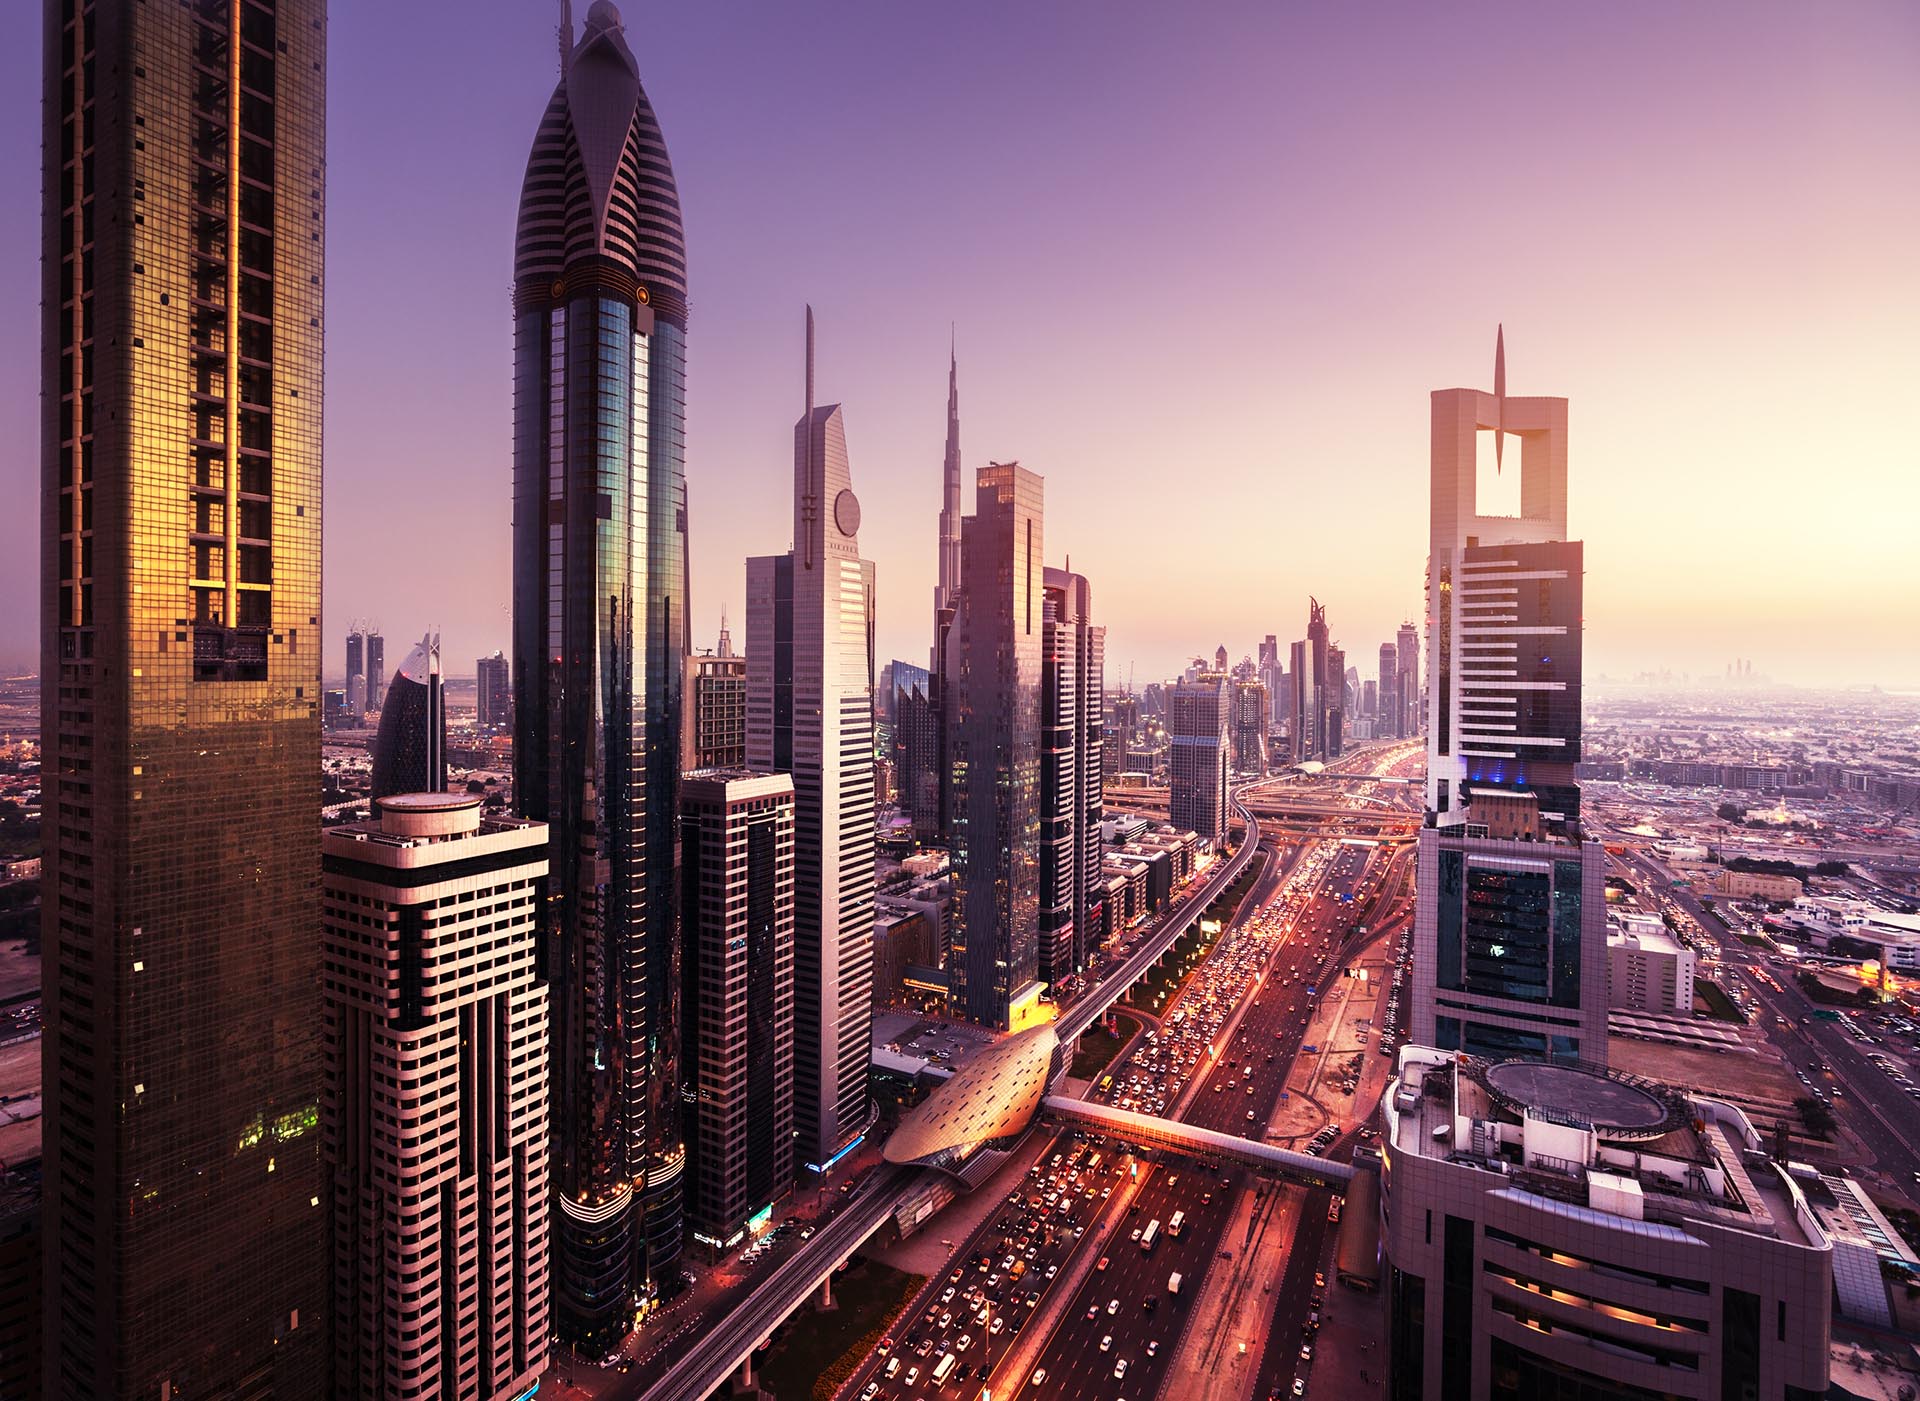 widok z lotu ptaka podczas zachodu słońca na ulicę, przy której stoją liczne smukłe wieżowce o szklanych elewacjach. To miasto to Dubaj